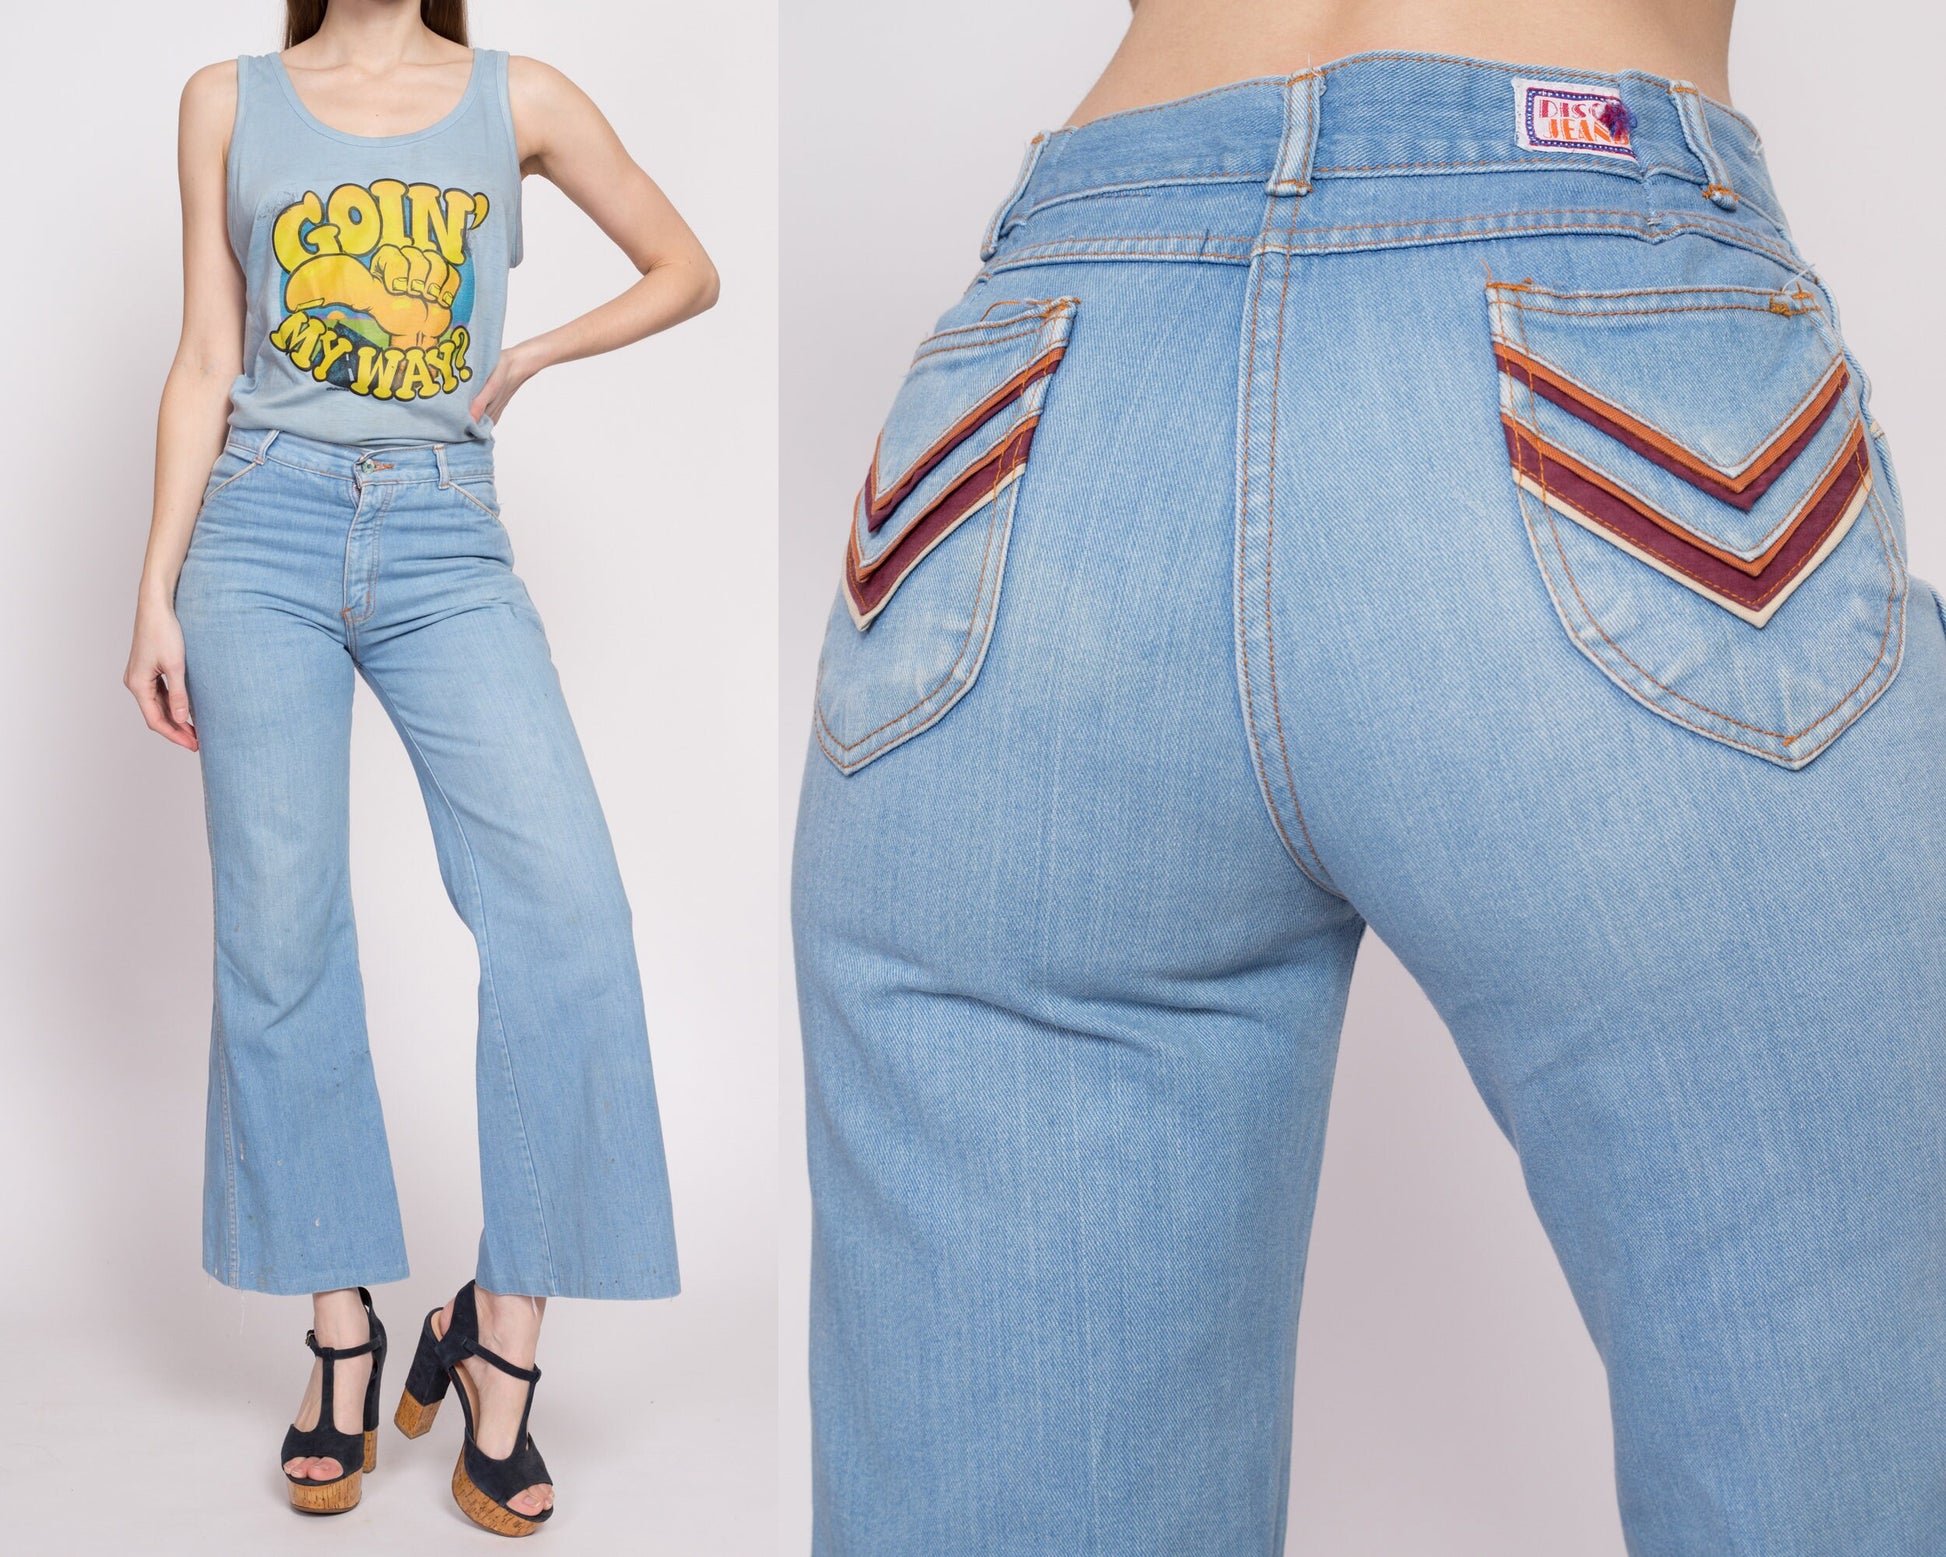 Vintage Levi's Bell- Bottoms Denim Jeans / Waist 32 – 86 Vintage